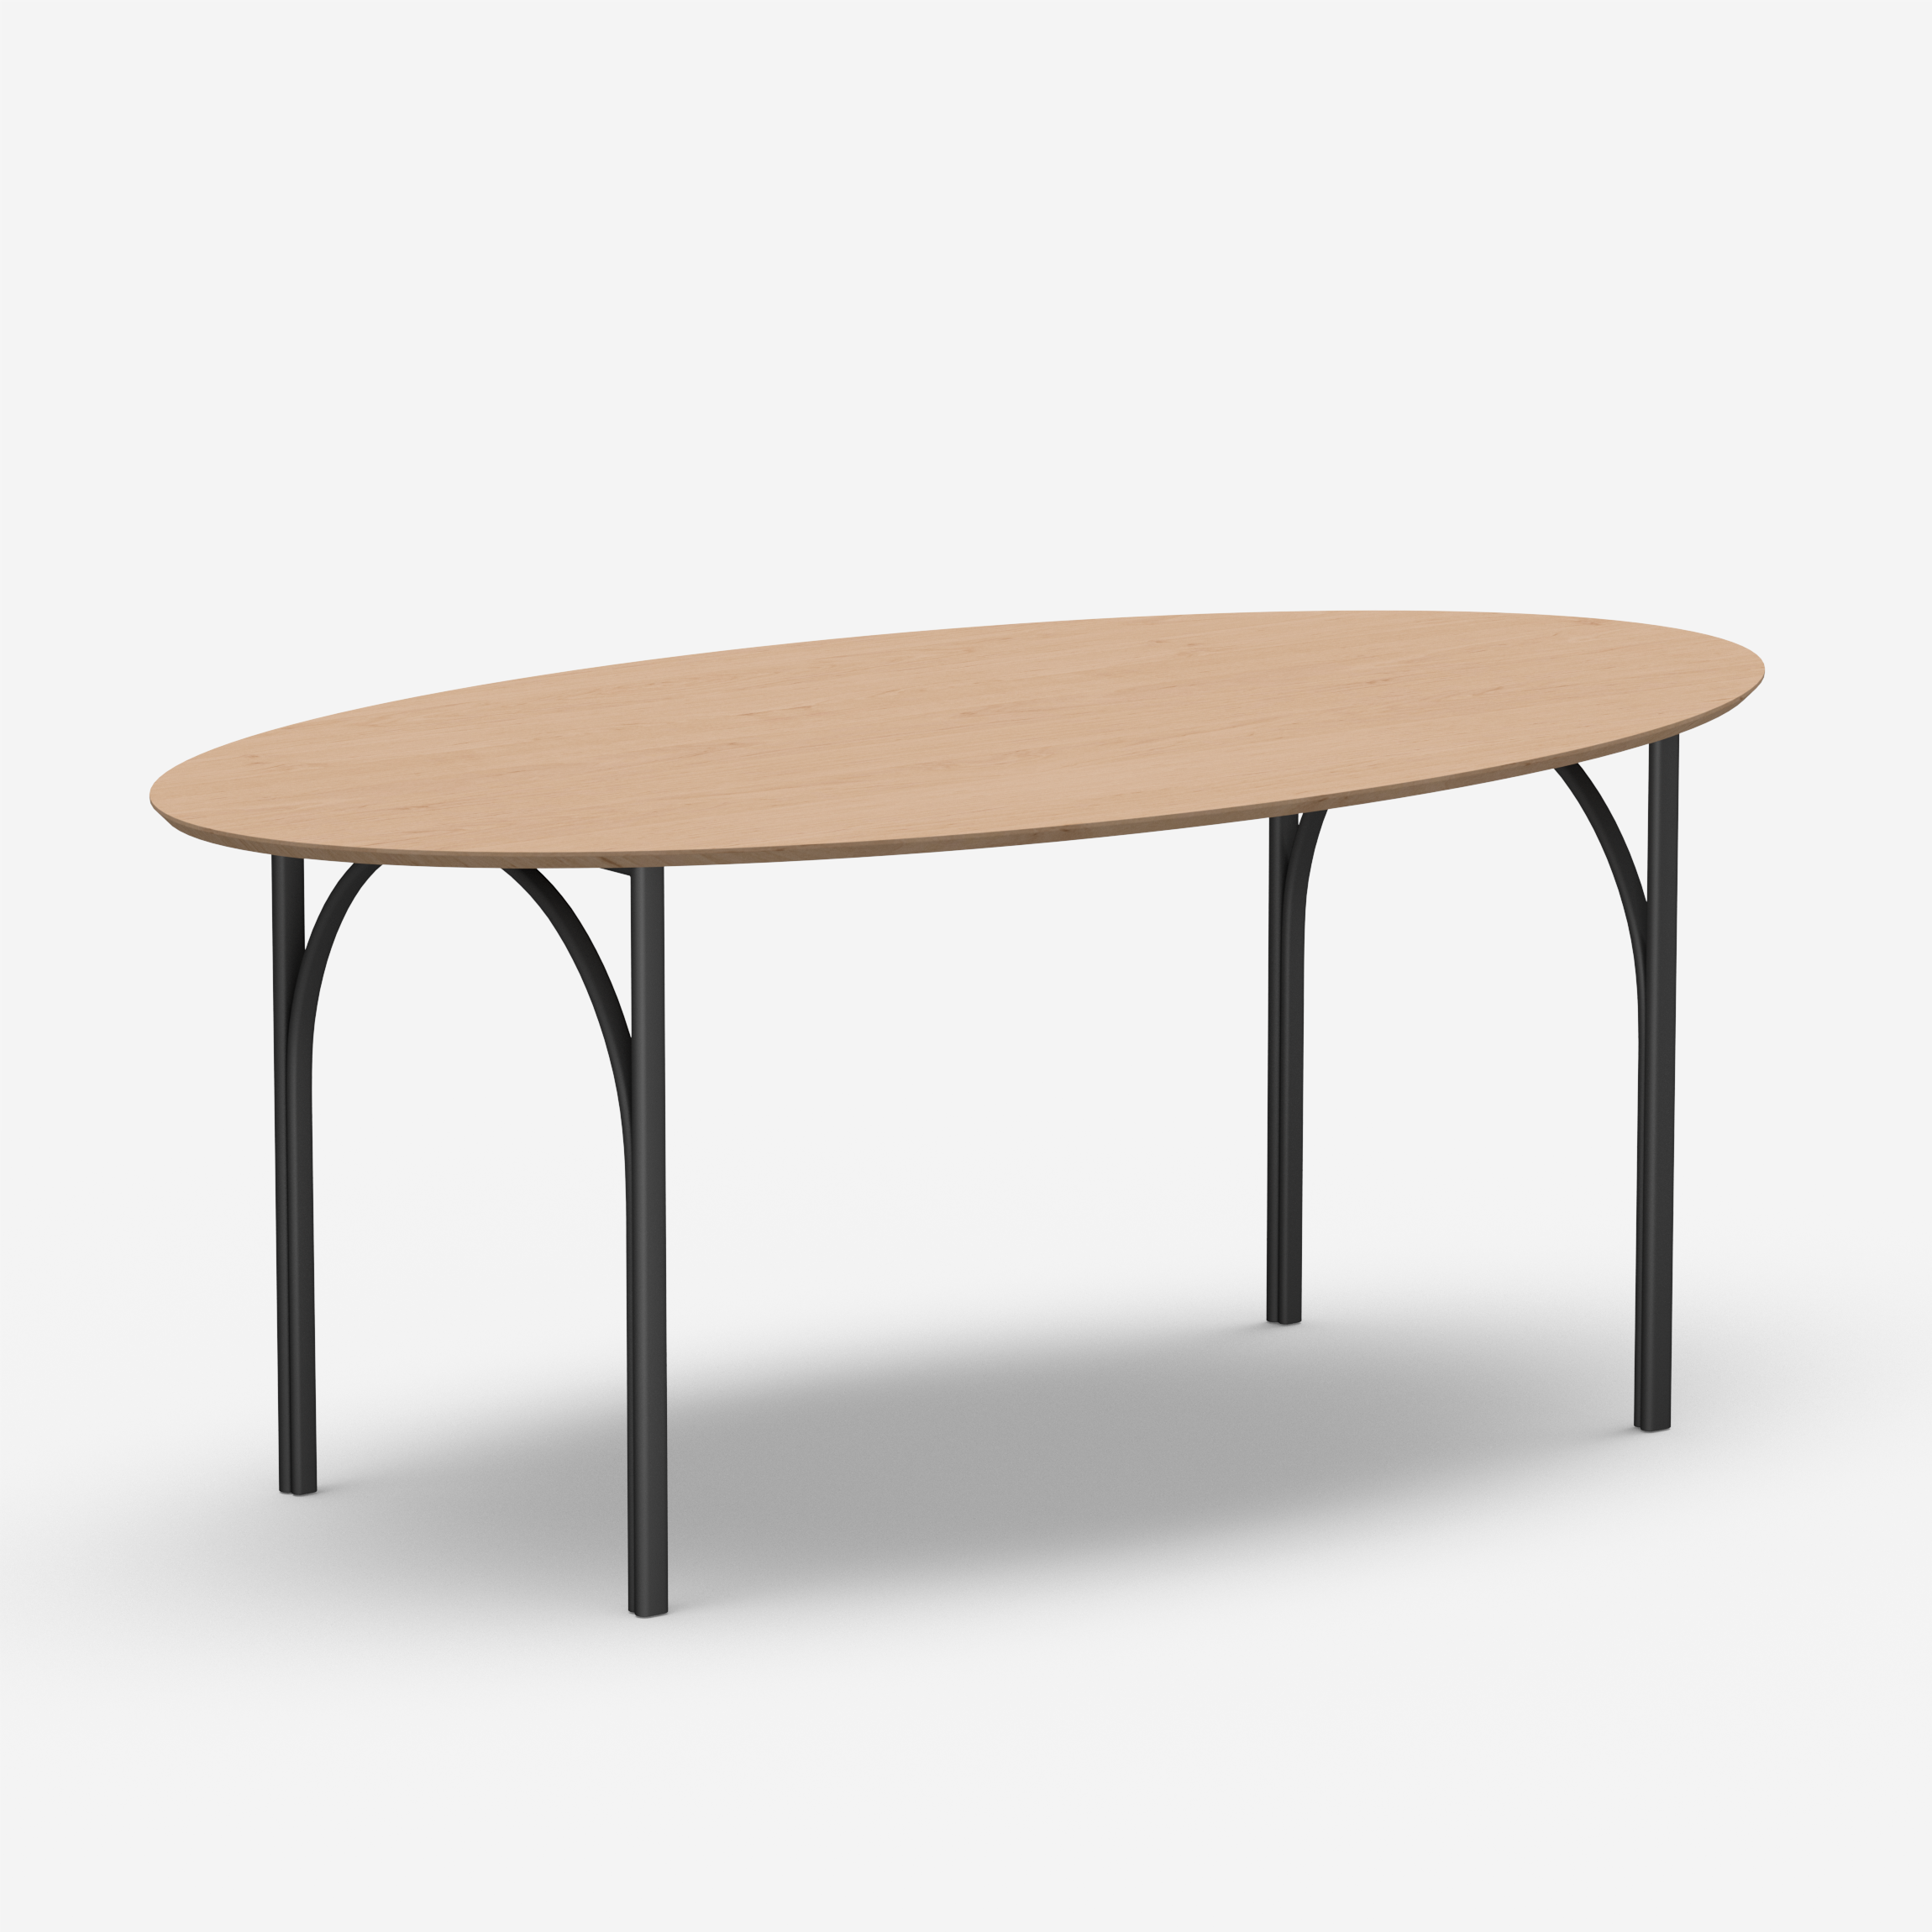 Loop - Table (Oval, 200N)